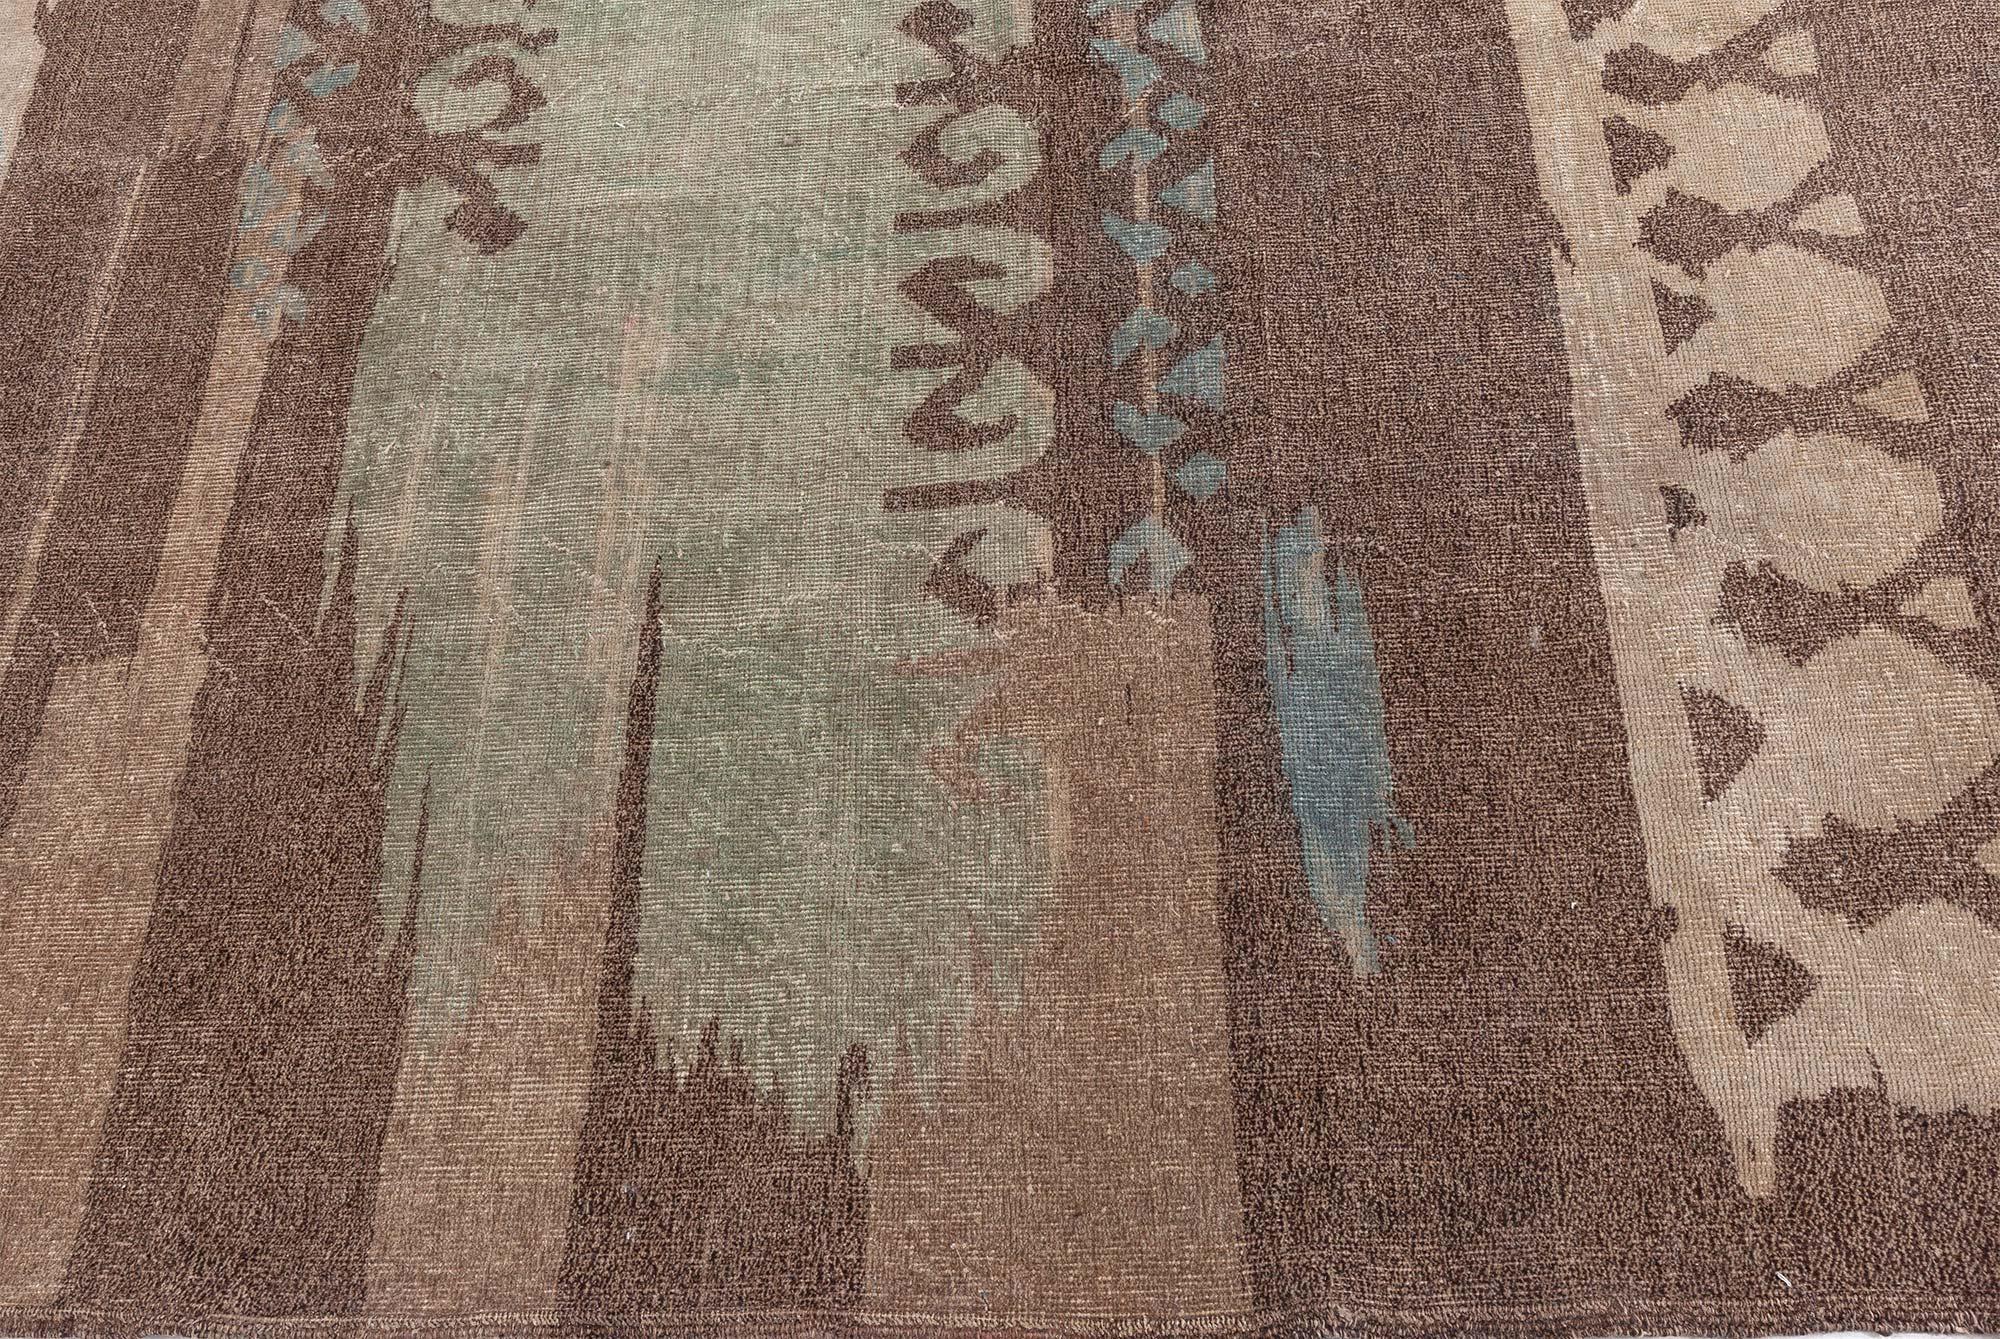 Französischer Art Déco Teppich aus brauner Wolle, handgefertigt.
Größe: 6'10